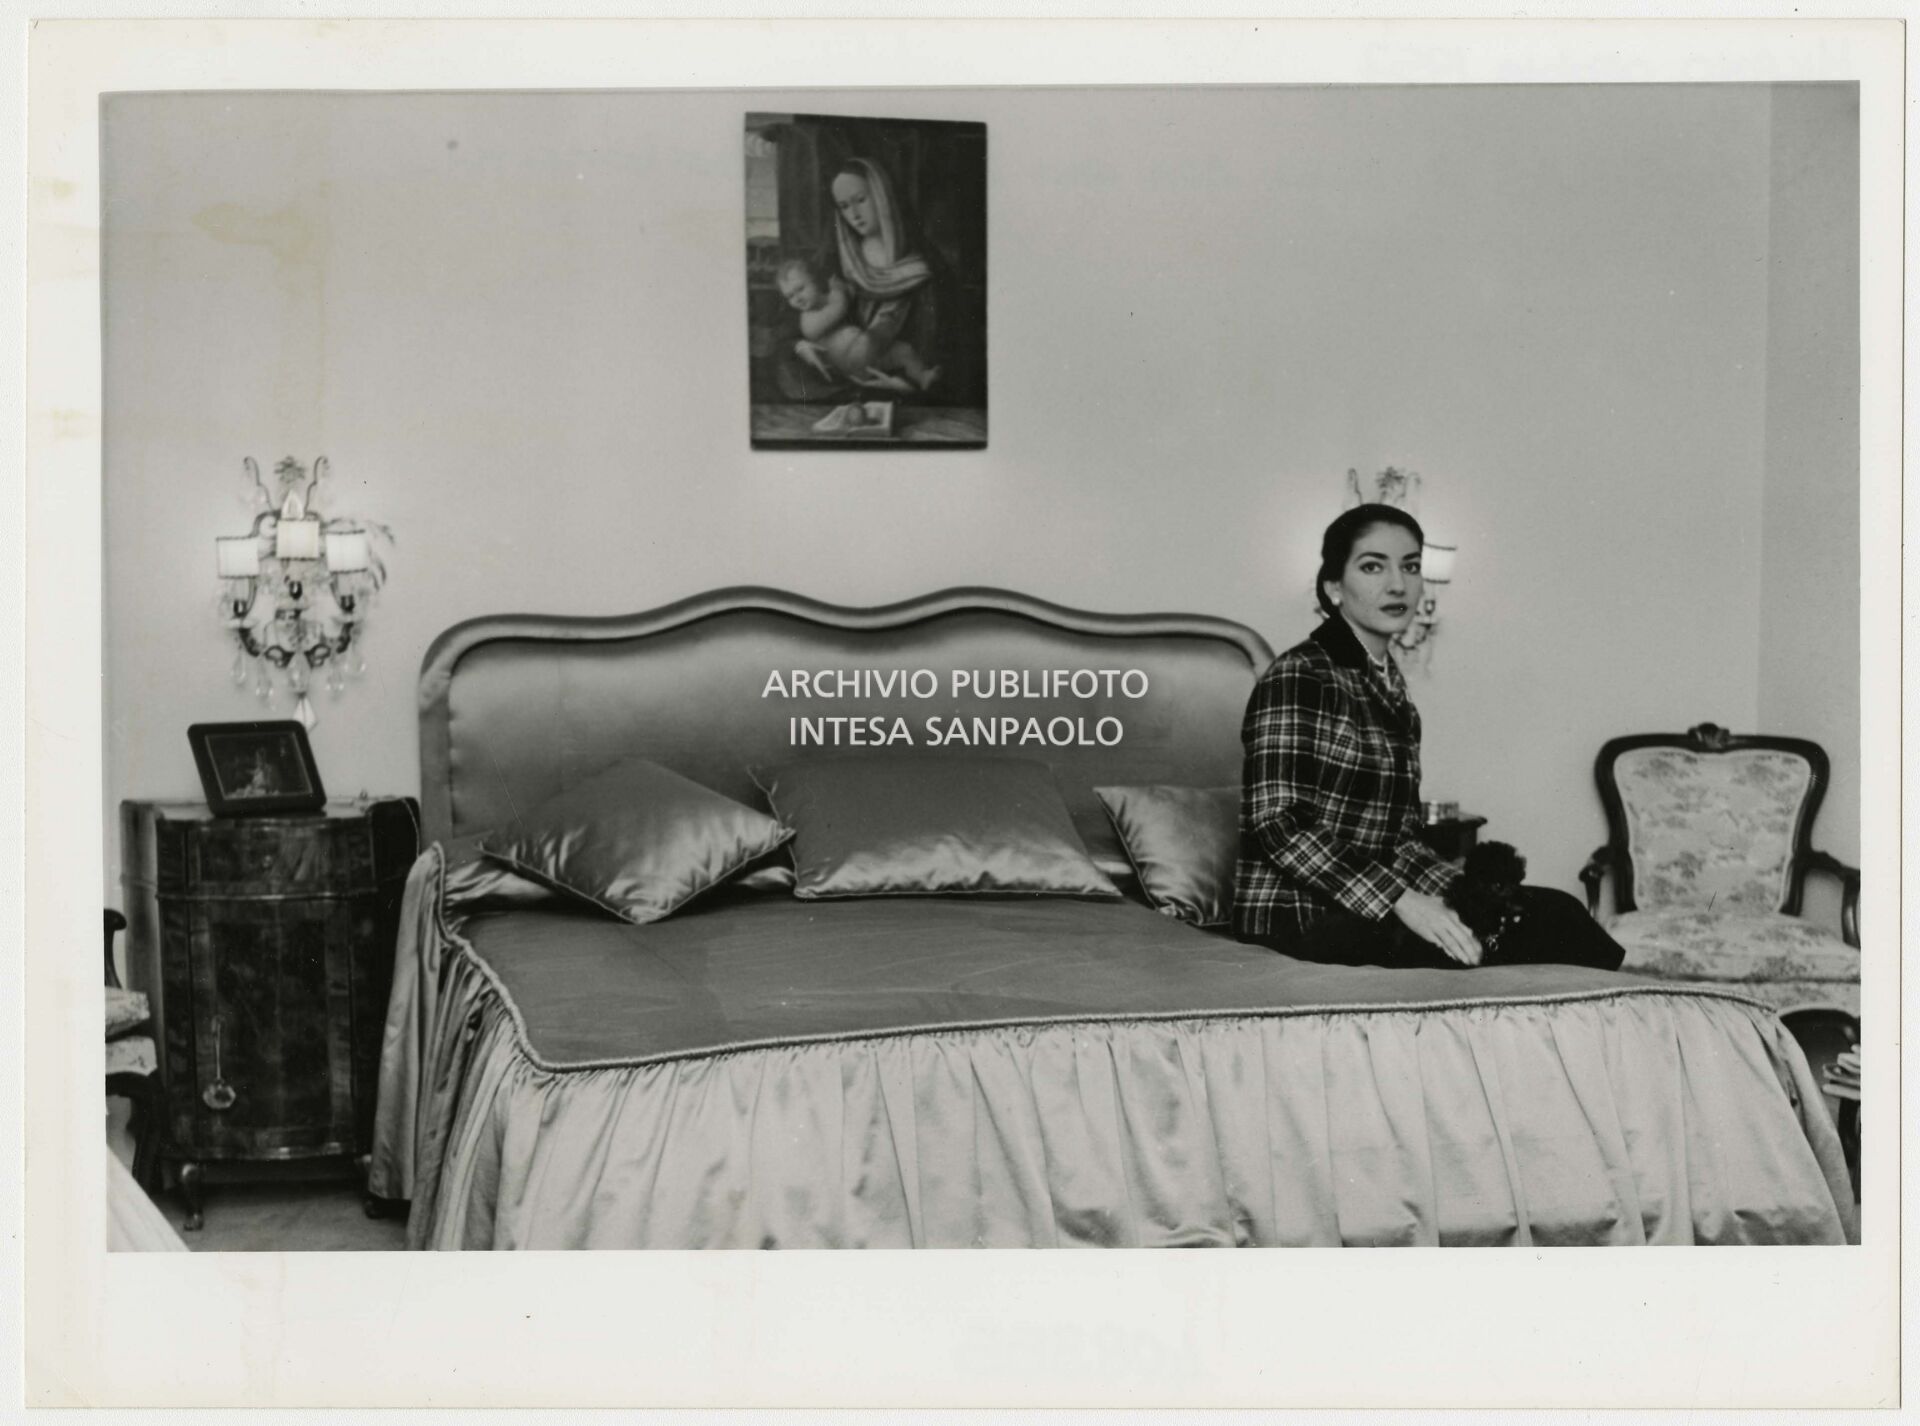 Maria Callas seduta sul letto in camera con il suo barboncino; sul comodino una piccola tela, la  "Sacra Famiglia"  da lei considerato un portafortuna che portava sempre con sé